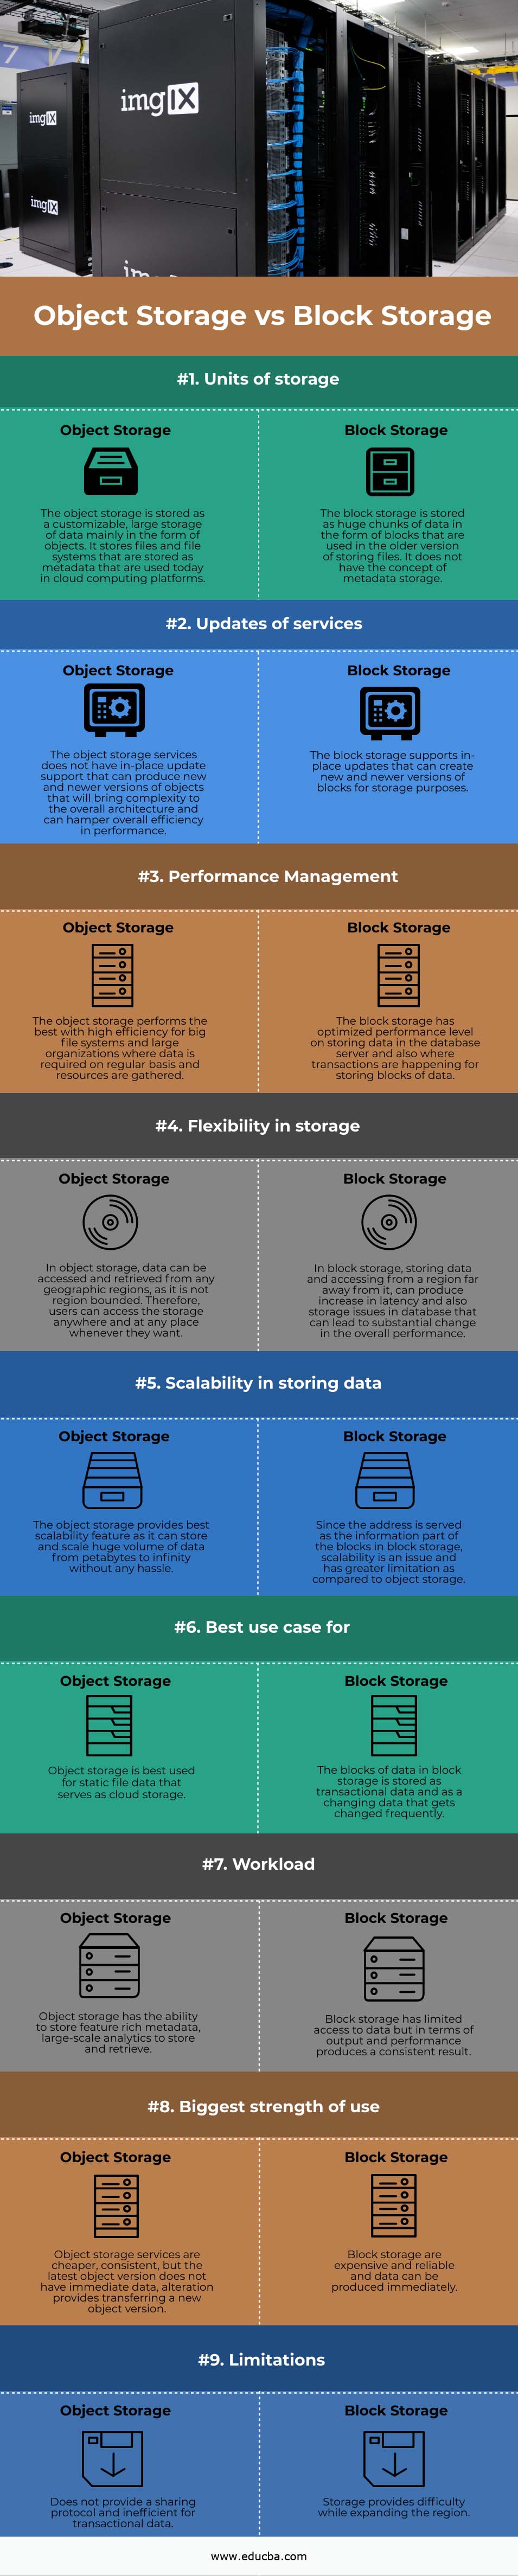 Object Storage vs Block Storage info